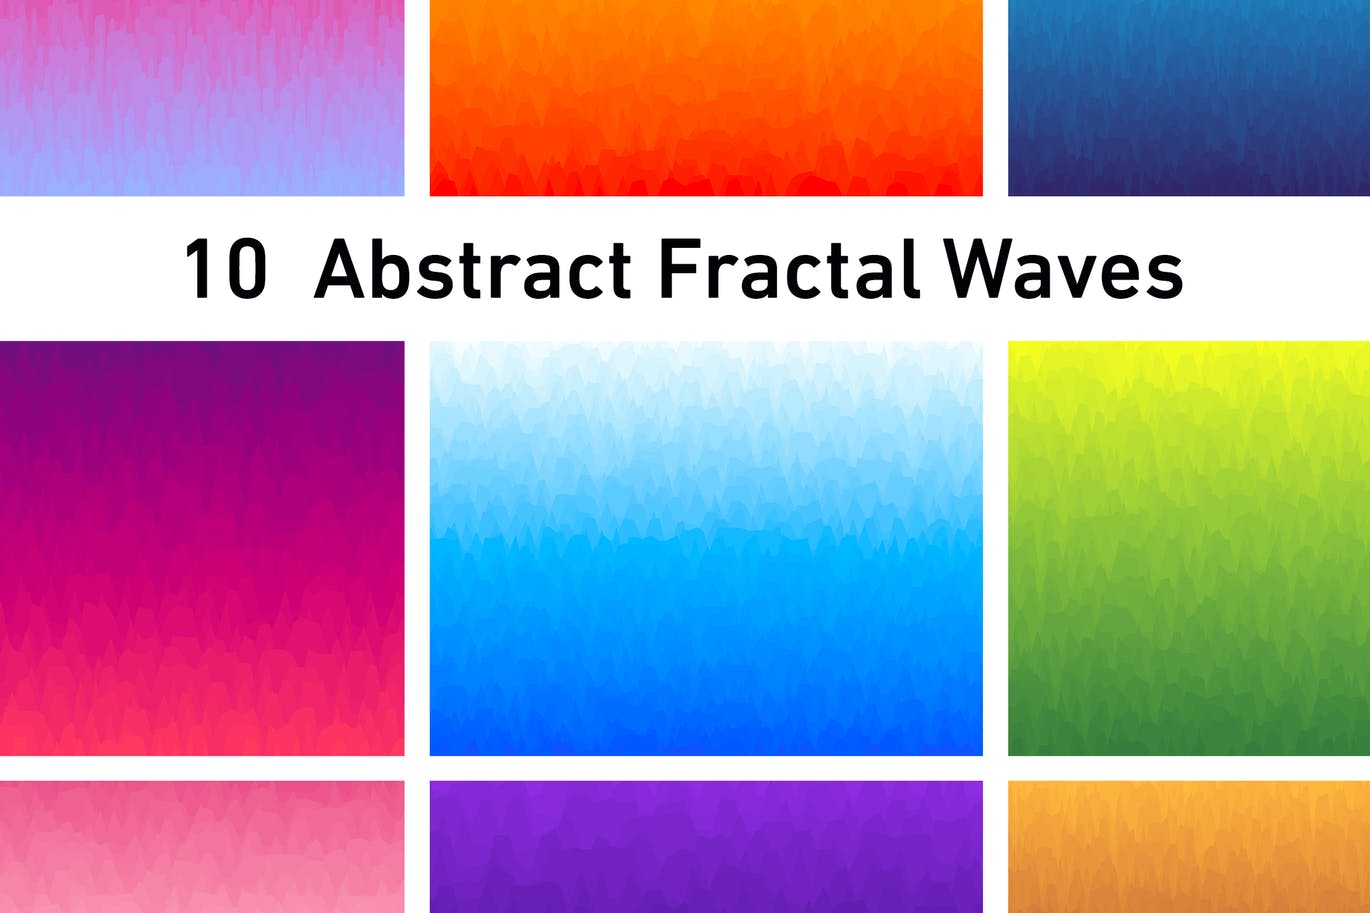 10张抽象水彩波纹背景图素材 10 Abstract Fractal Waves Background插图